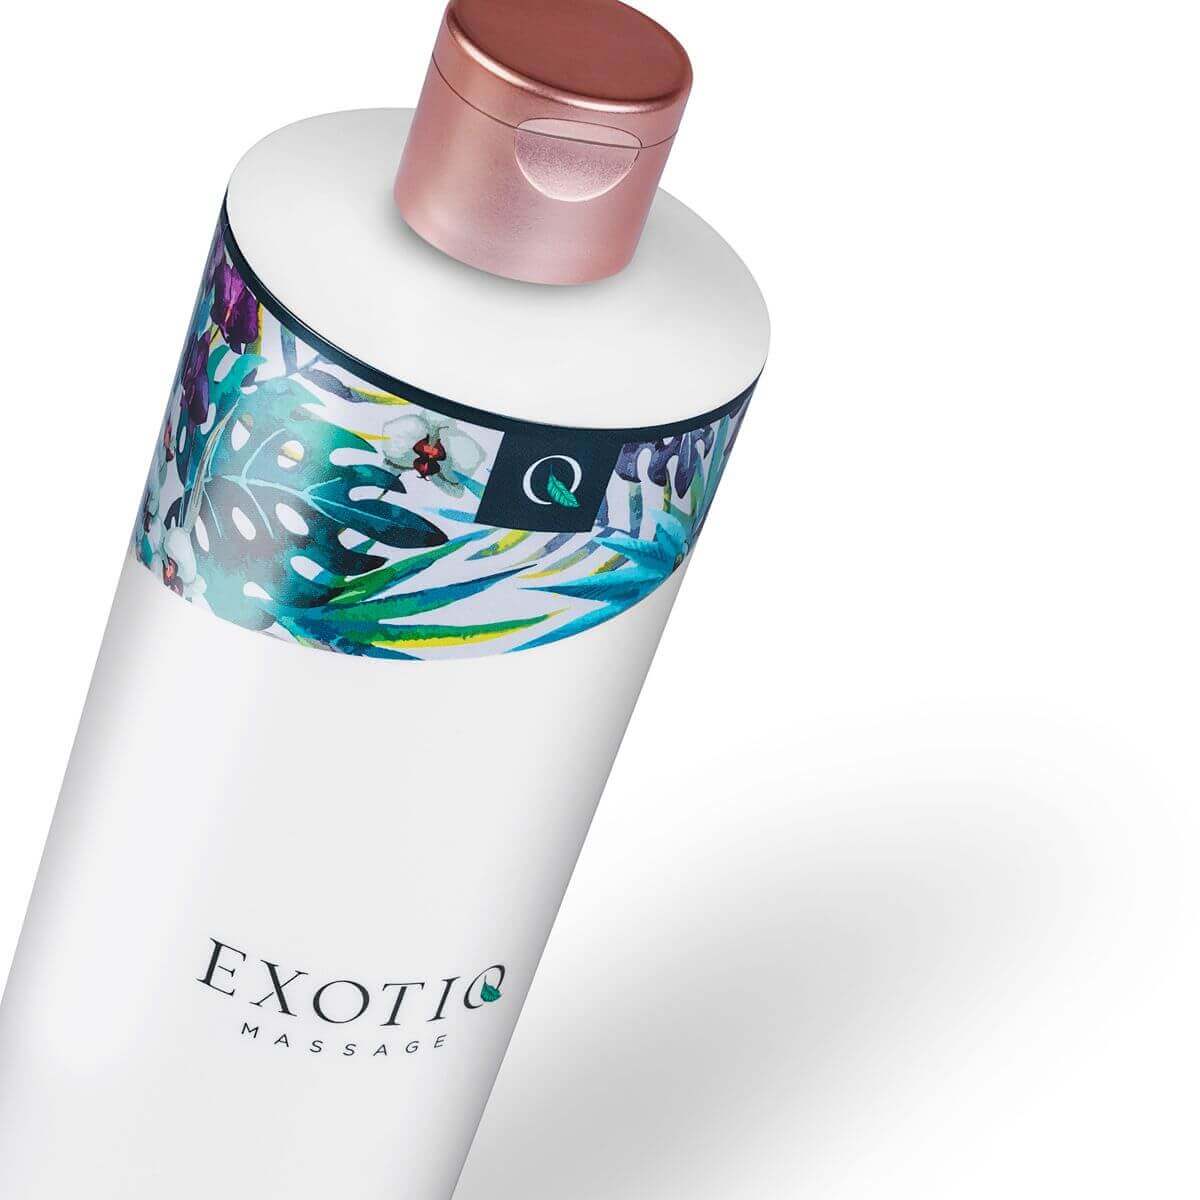 Exotiq Body To Body - hosszantartó masszázsolaj (500 ml) Síkosító, masszázs olaj kép